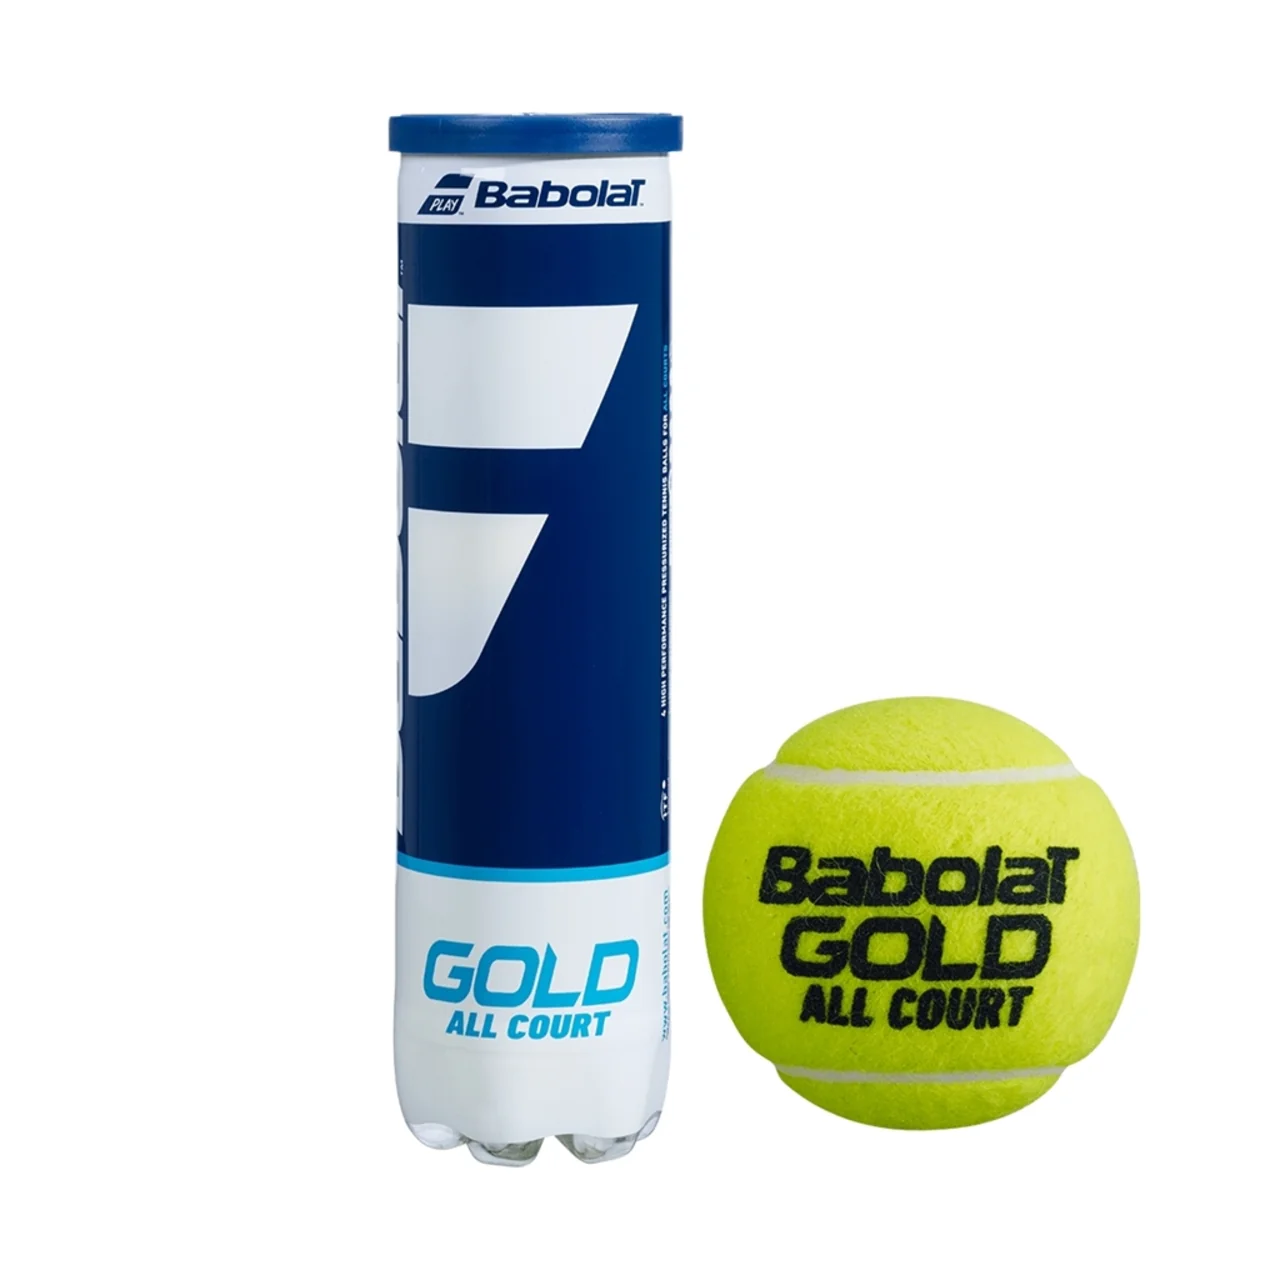 Babolat Gold 18 tubes